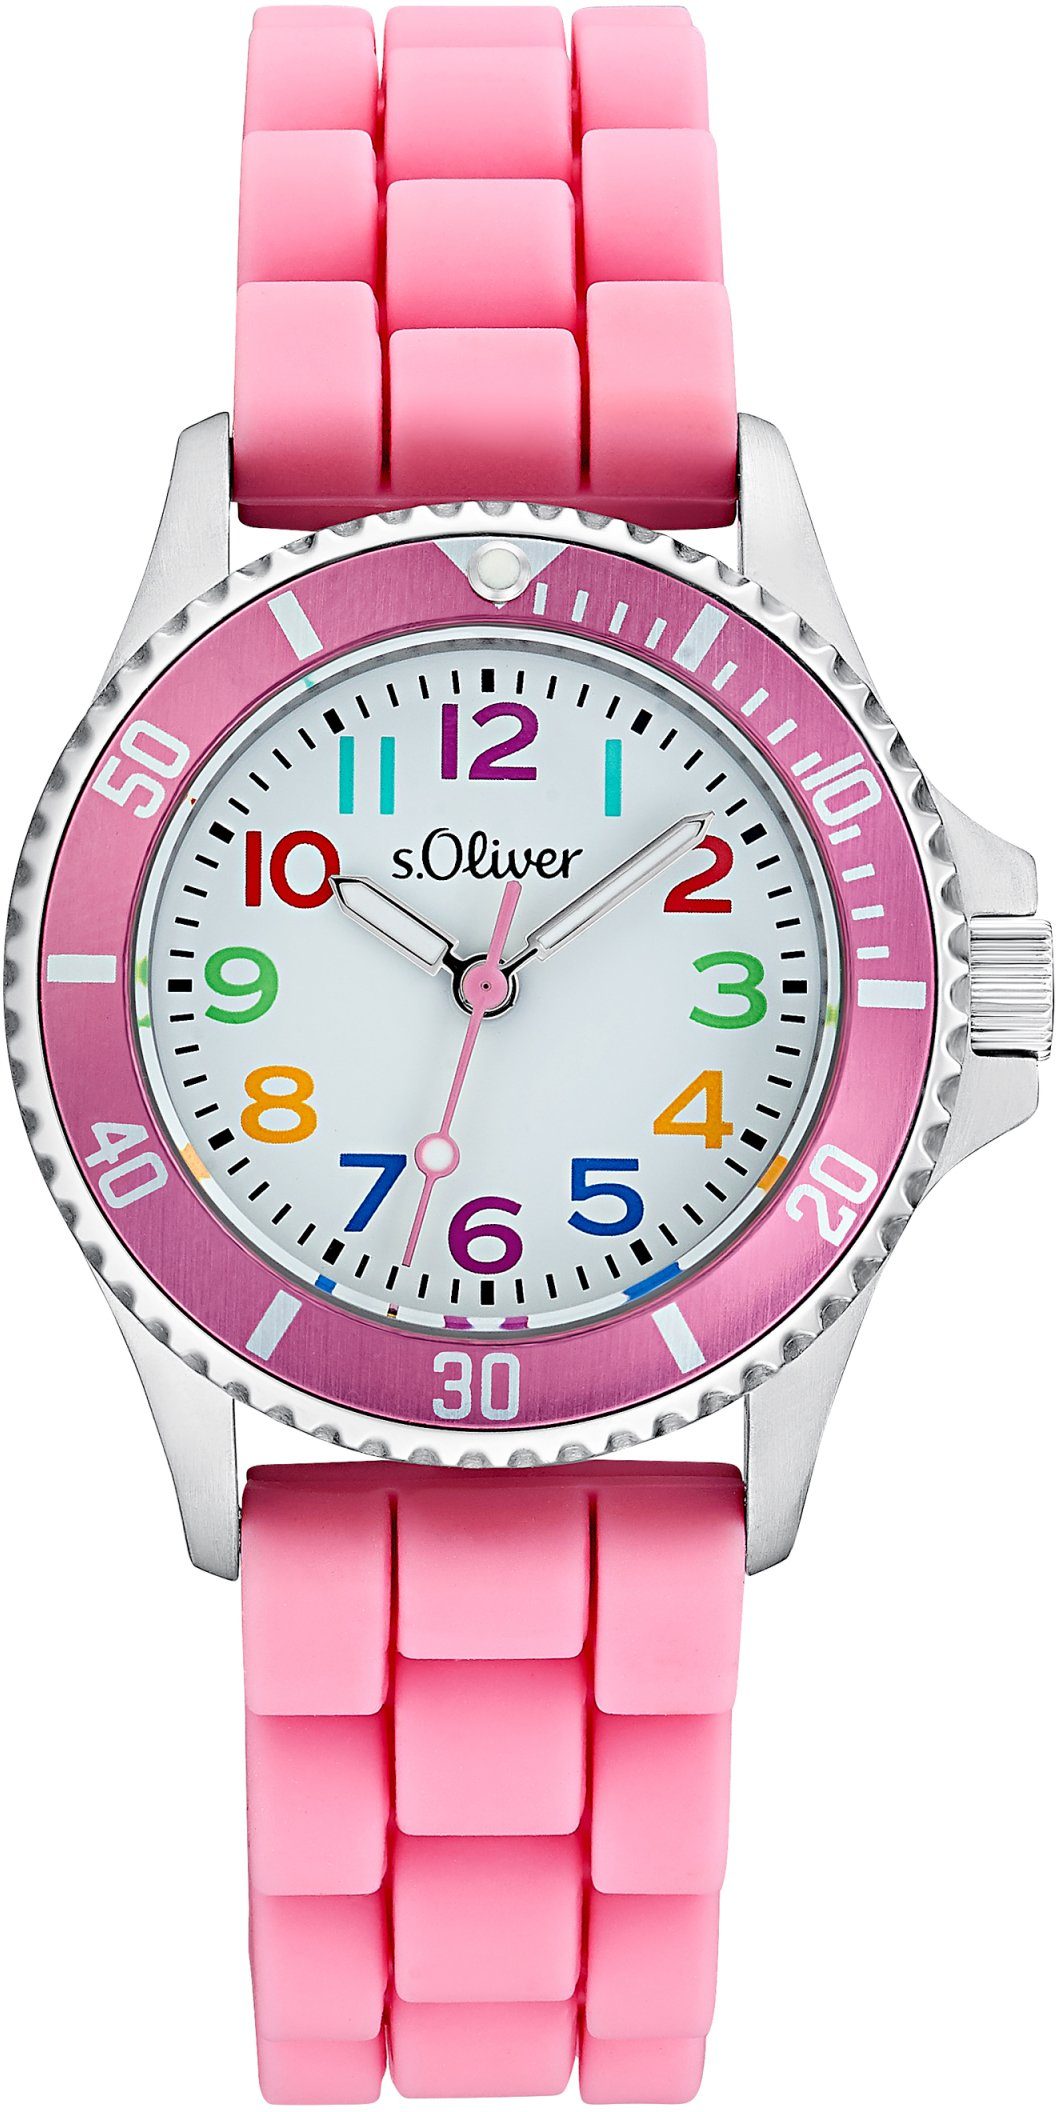 s.Oliver Quarzuhr 2033505, Armbanduhr, Kinderuhr, Mädchenuhr, ideal auch als Geschenk